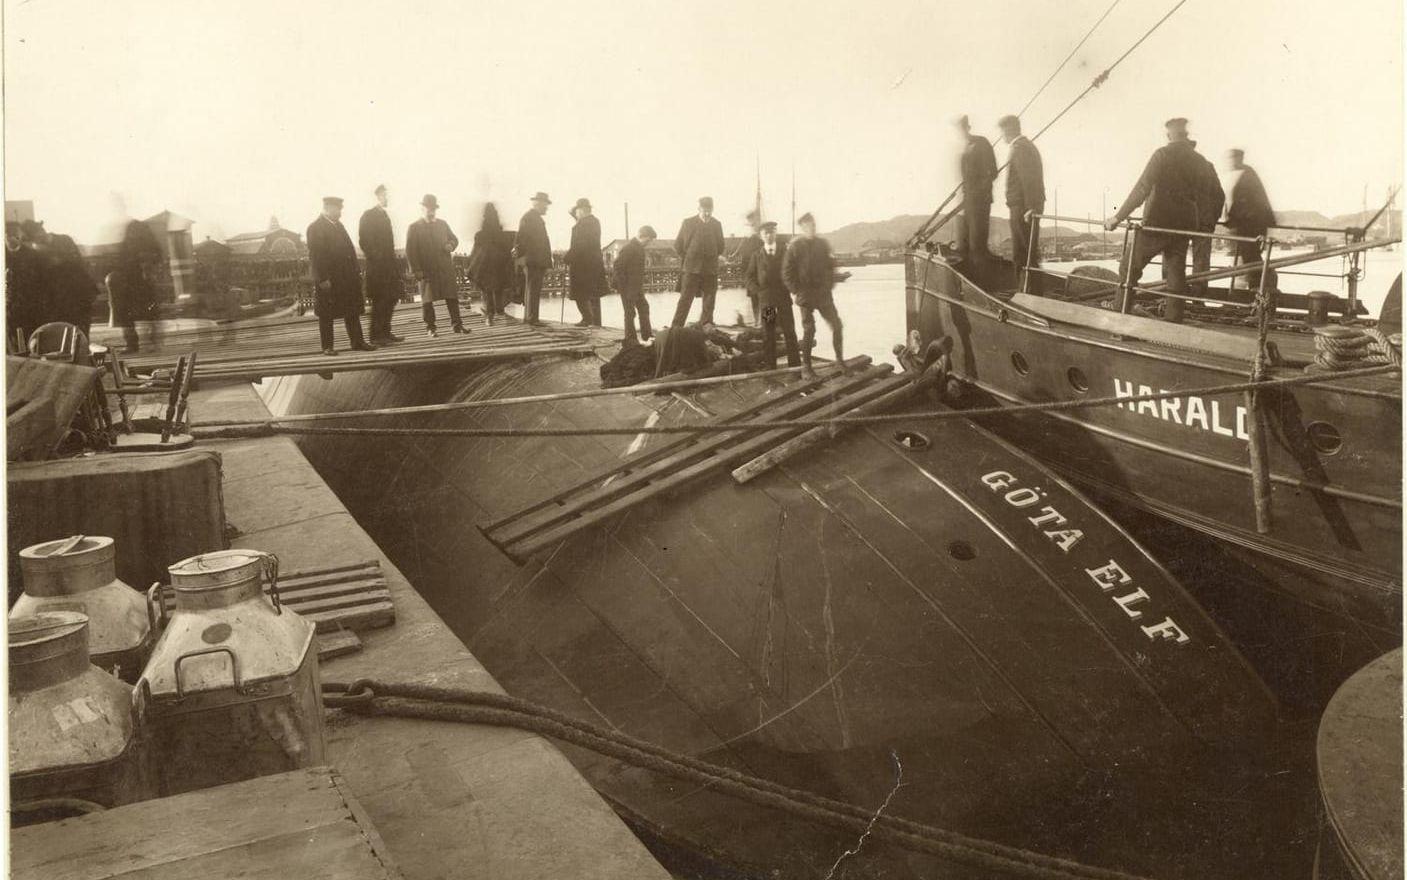 Den 15 april 1908 fick ångfartyget ”Göta Elf” förskjutning i lasten medan hon låg förtöjd och kantrade vid Lilla Bommens kaj i Göteborg omedelbart efter avfärd.  Aktersalongen var full med folk, mest lantbrukarkvinnor som varit i Göteborg för att sälja gårdens produkter. Fartygets destination var Lilla Edet. 26 personer omkom. Kapten Isak Mauritz Simonsson räddades från att drunkna och dömdes till ett kortare fängelsestraff. 